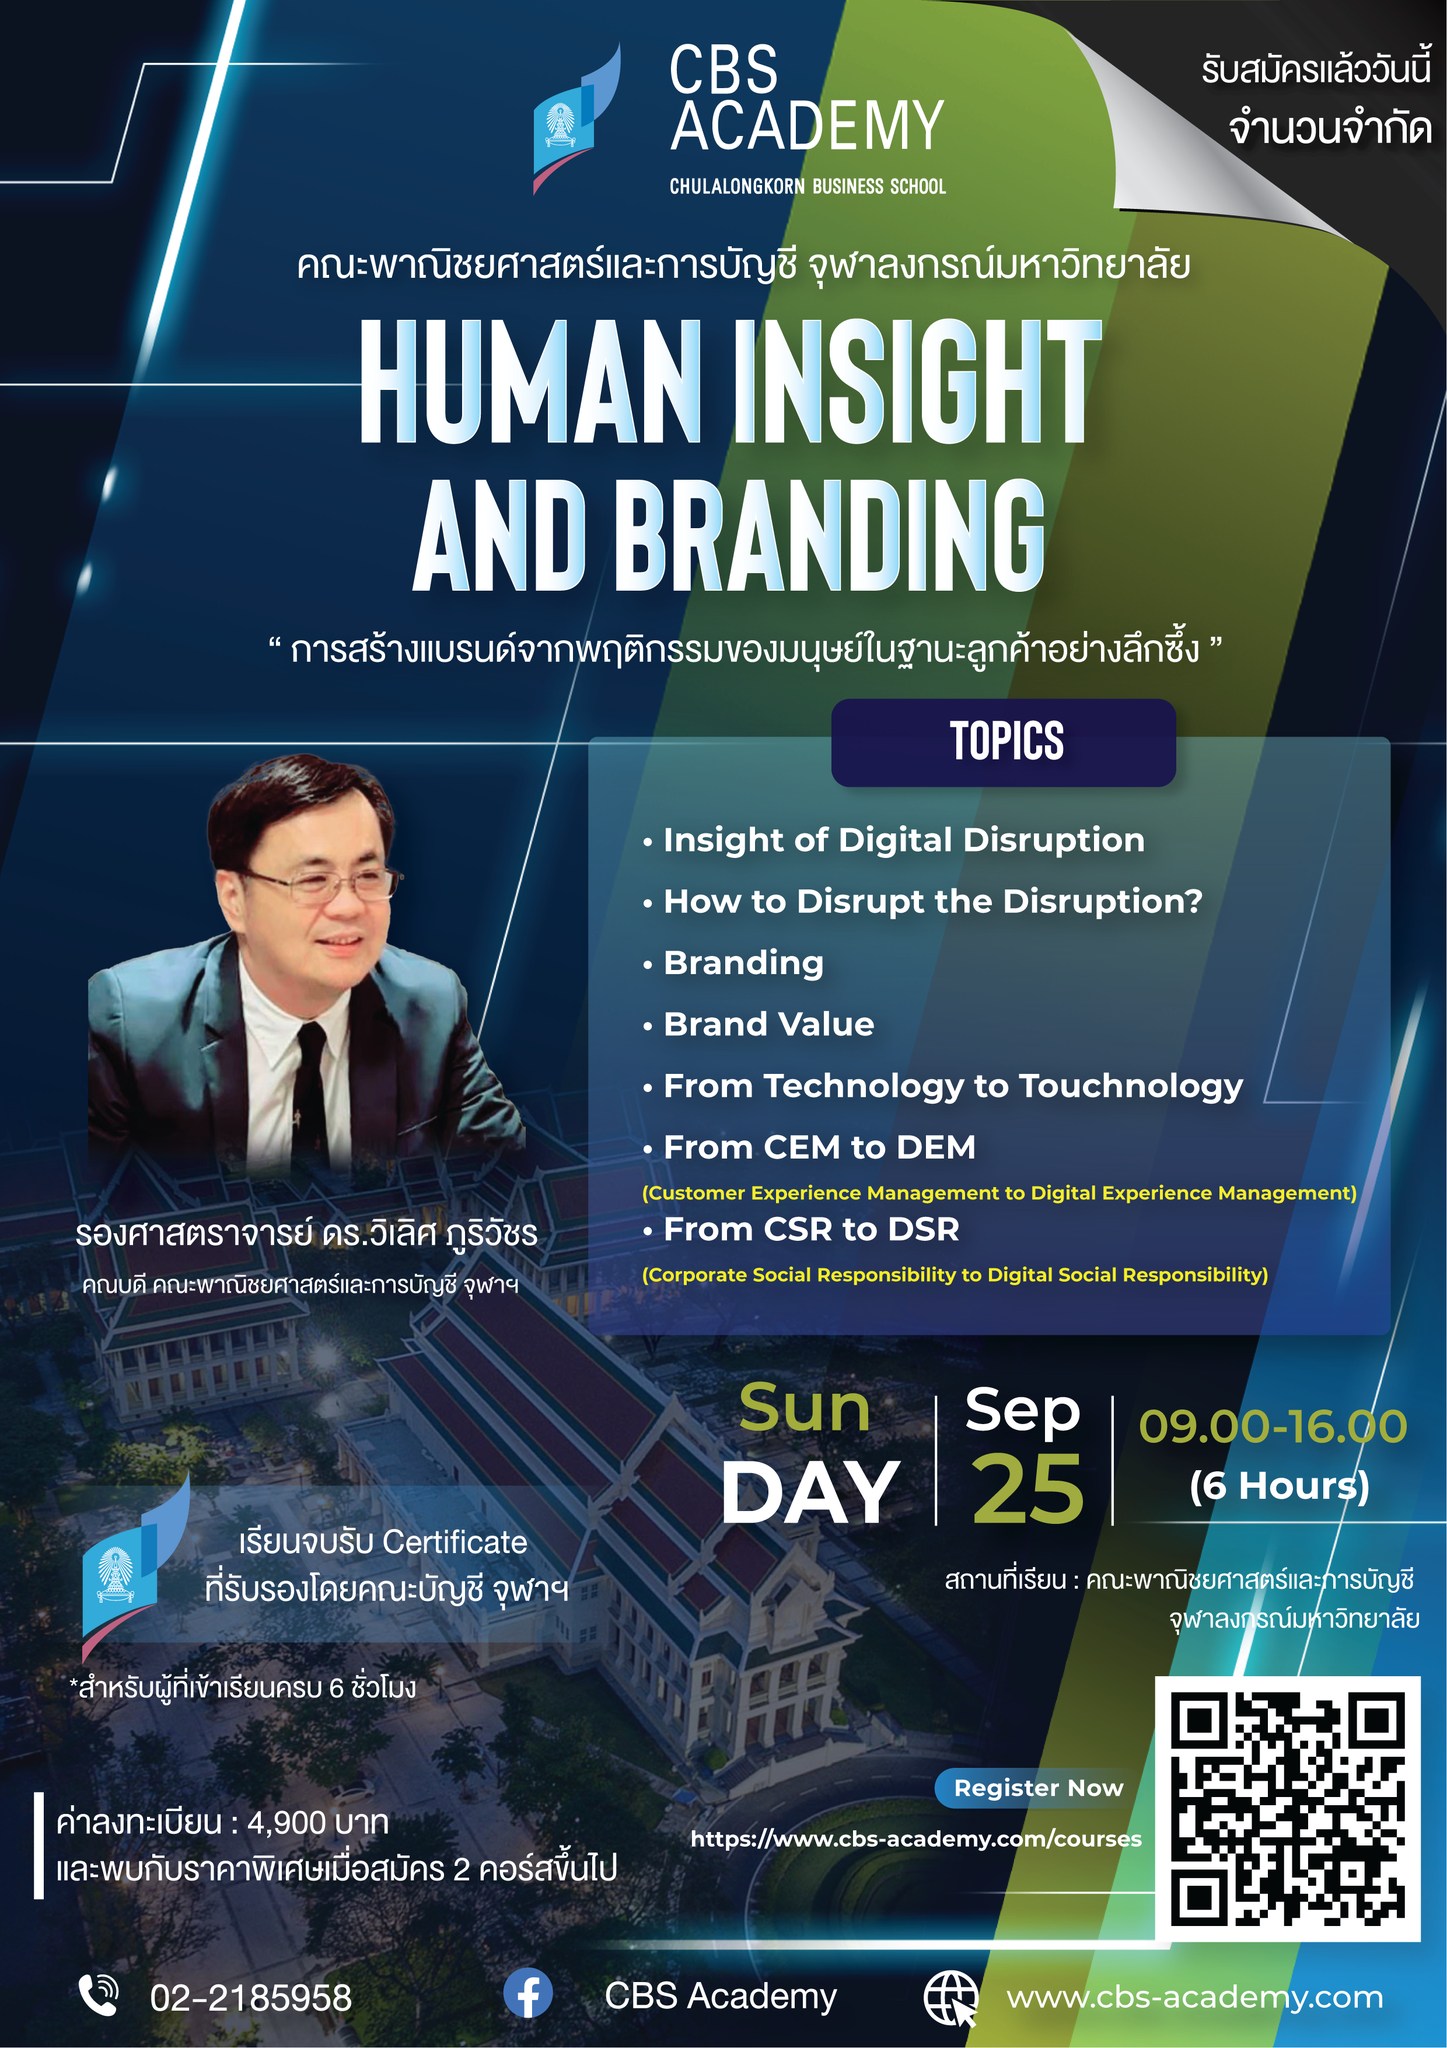 หลักสูตร “Human Insight and Branding” 👨‍🏫ที่สอนโดย รองศาสตราจารย์ ดร.วิเลิศ ภูริวัชร คณบดี ของ Chulalongkorn Business School และอาจารย์ประจำภาควิชาการตลาด